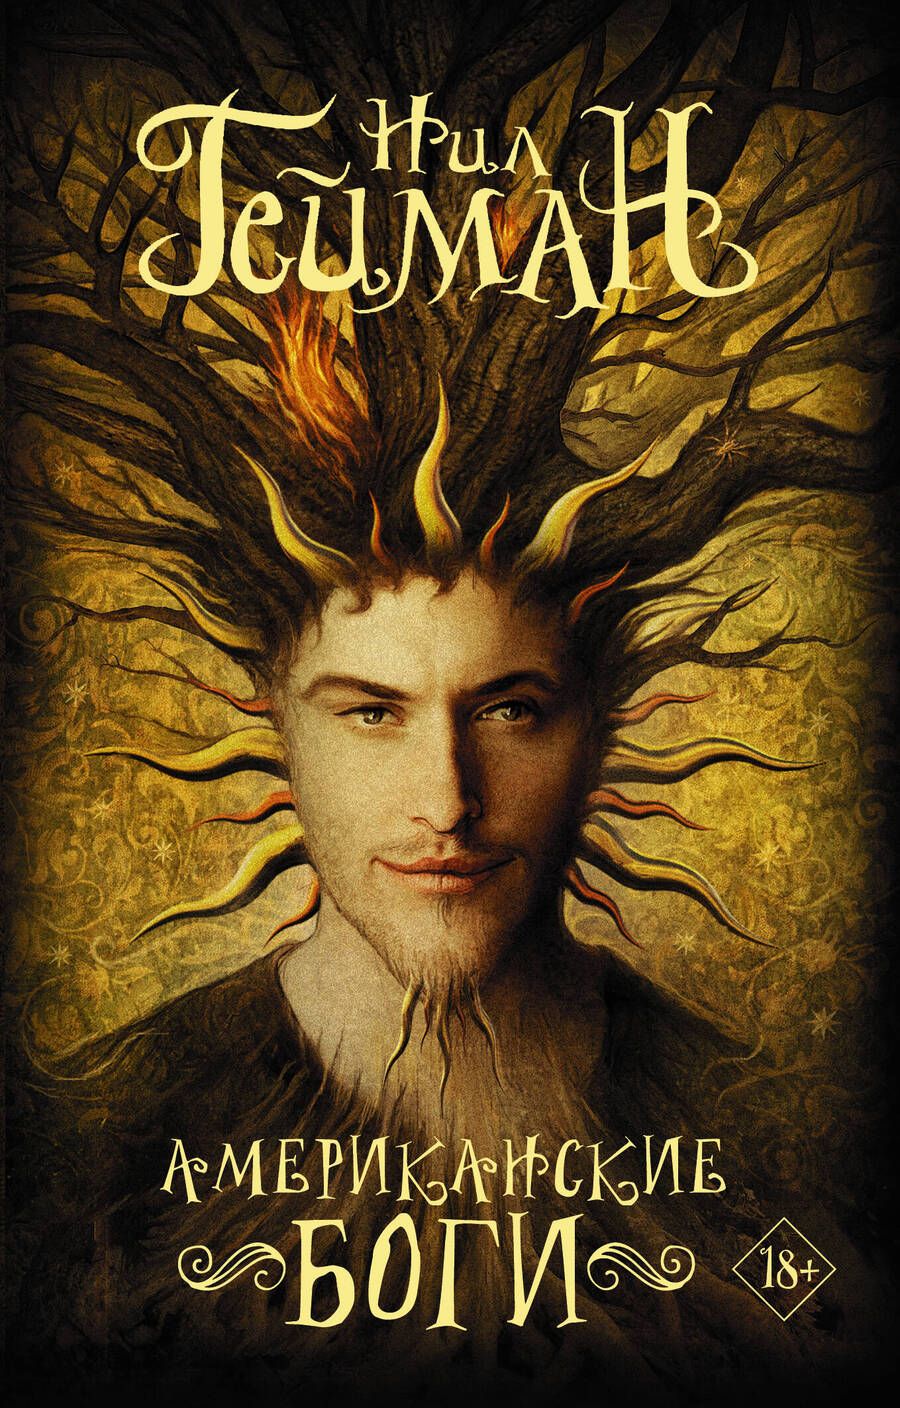 Обложка книги "Гейман: Американские боги"